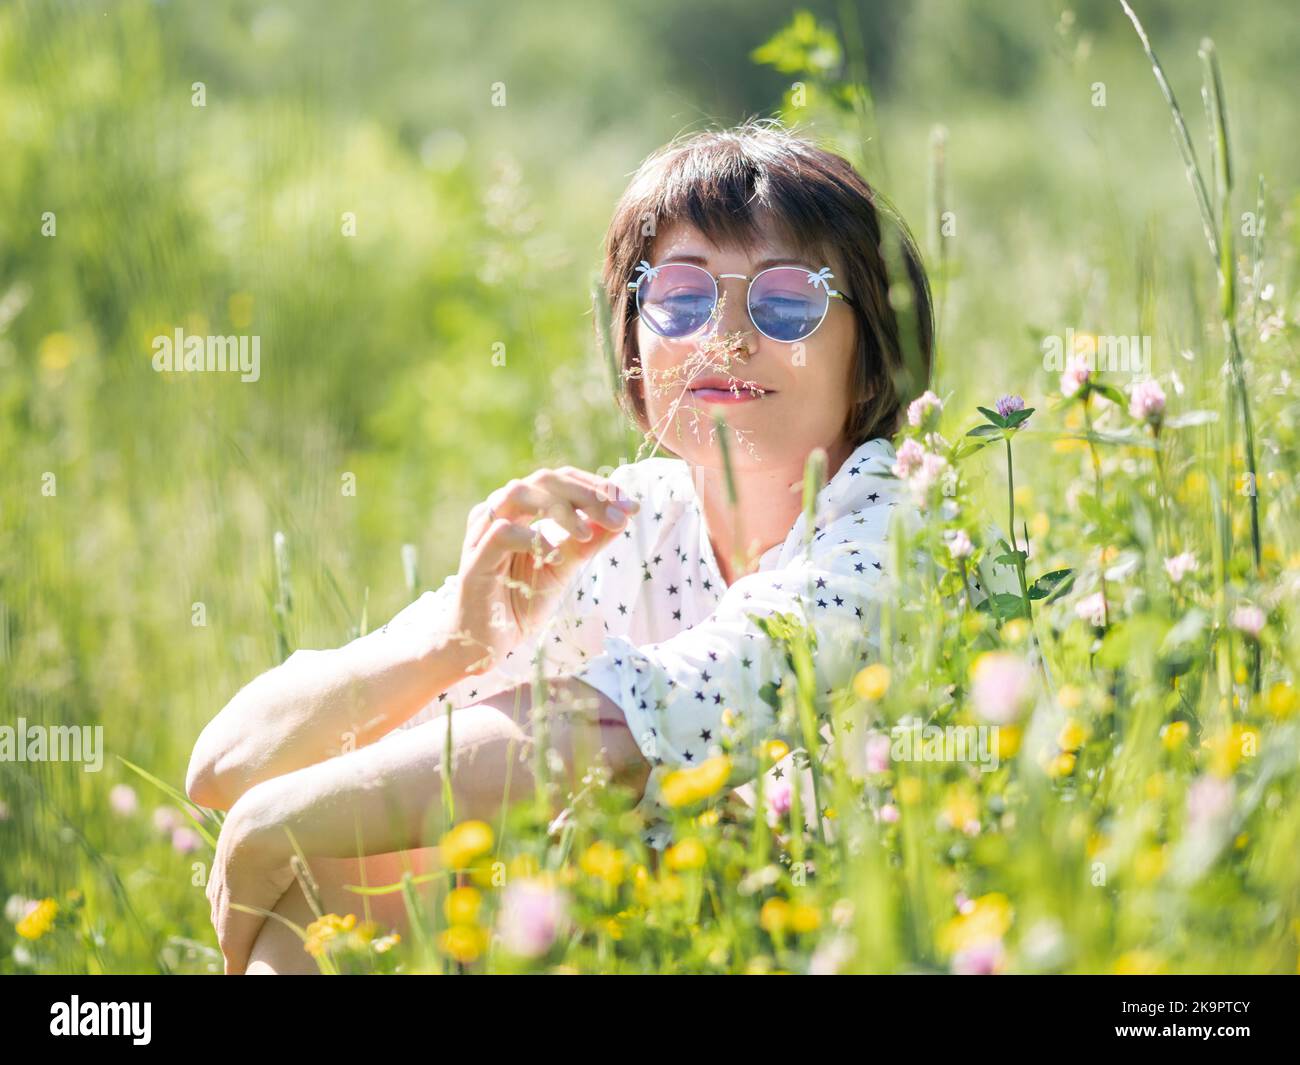 Frau in bunten Sonnenbrillen, genießt Sonnenlicht und Blumenduft auf Grasfeld. Sommerliche Stimmung. Entspannen Sie sich im Freien. Selbstberuhigend. Stockfoto